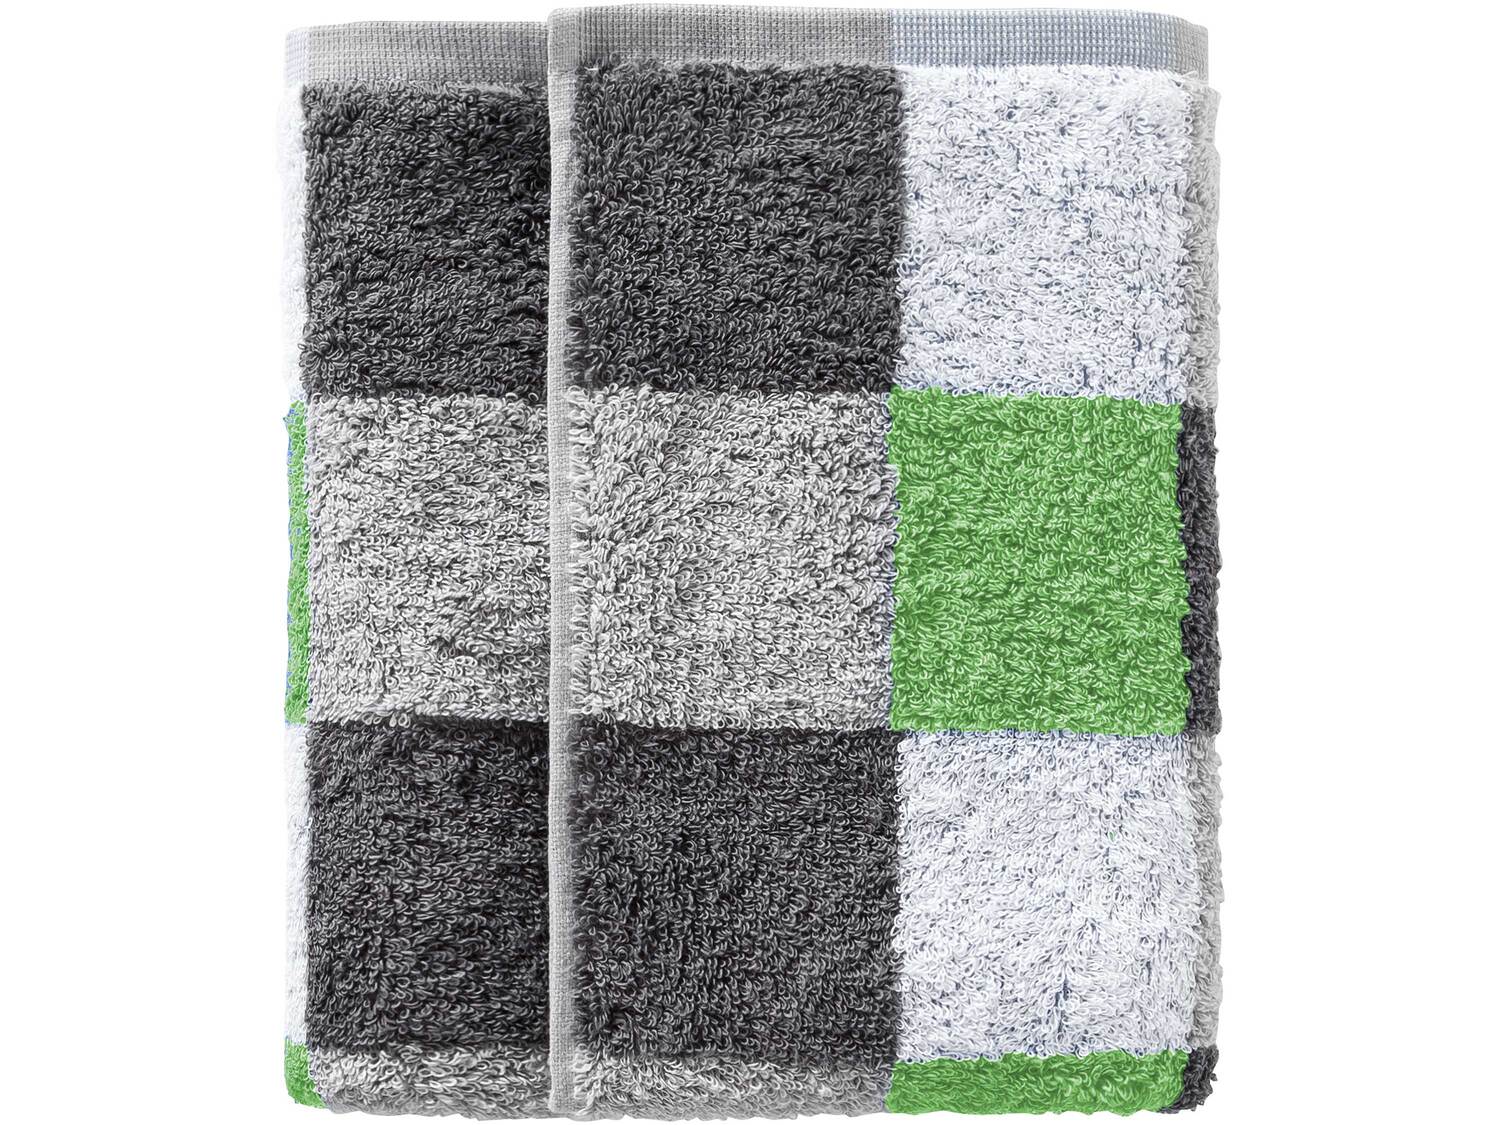 Ręcznik 50 x 100 cm Miomare, cena 9,99 PLN 
14 wzorów 
- 100% bawełny
- chłonne ...